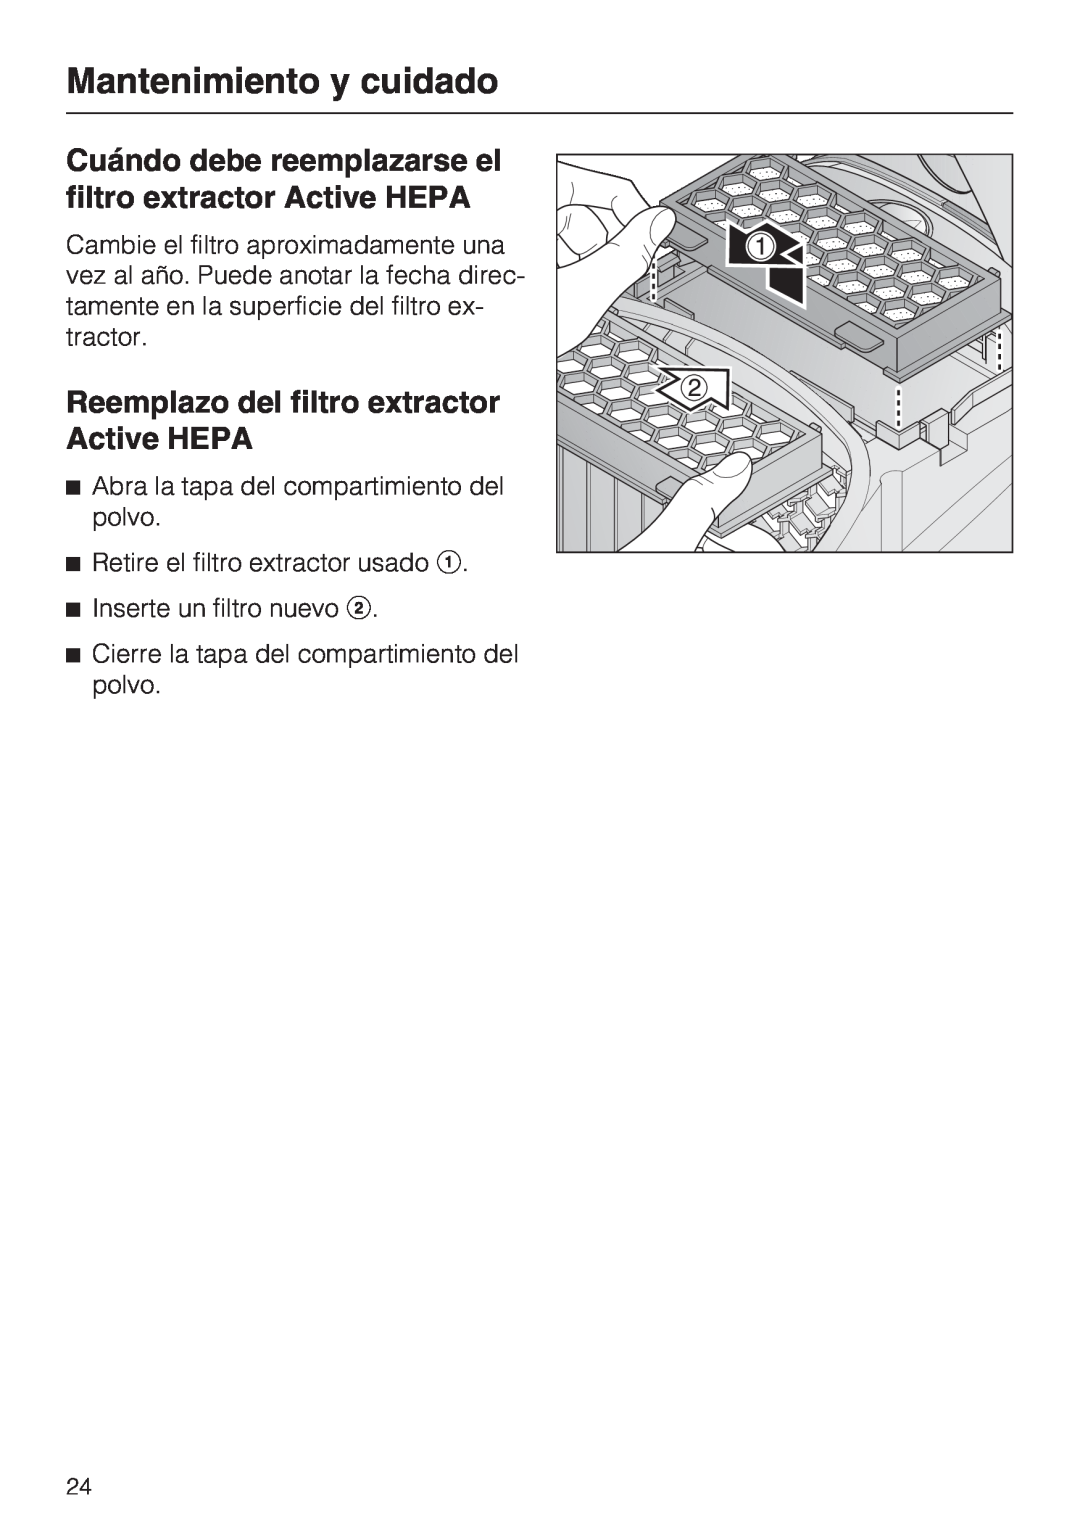 Miele S 2000 Reemplazo del filtro extractor Active HEPA, Mantenimiento y cuidado, Retire el filtro extractor usado 